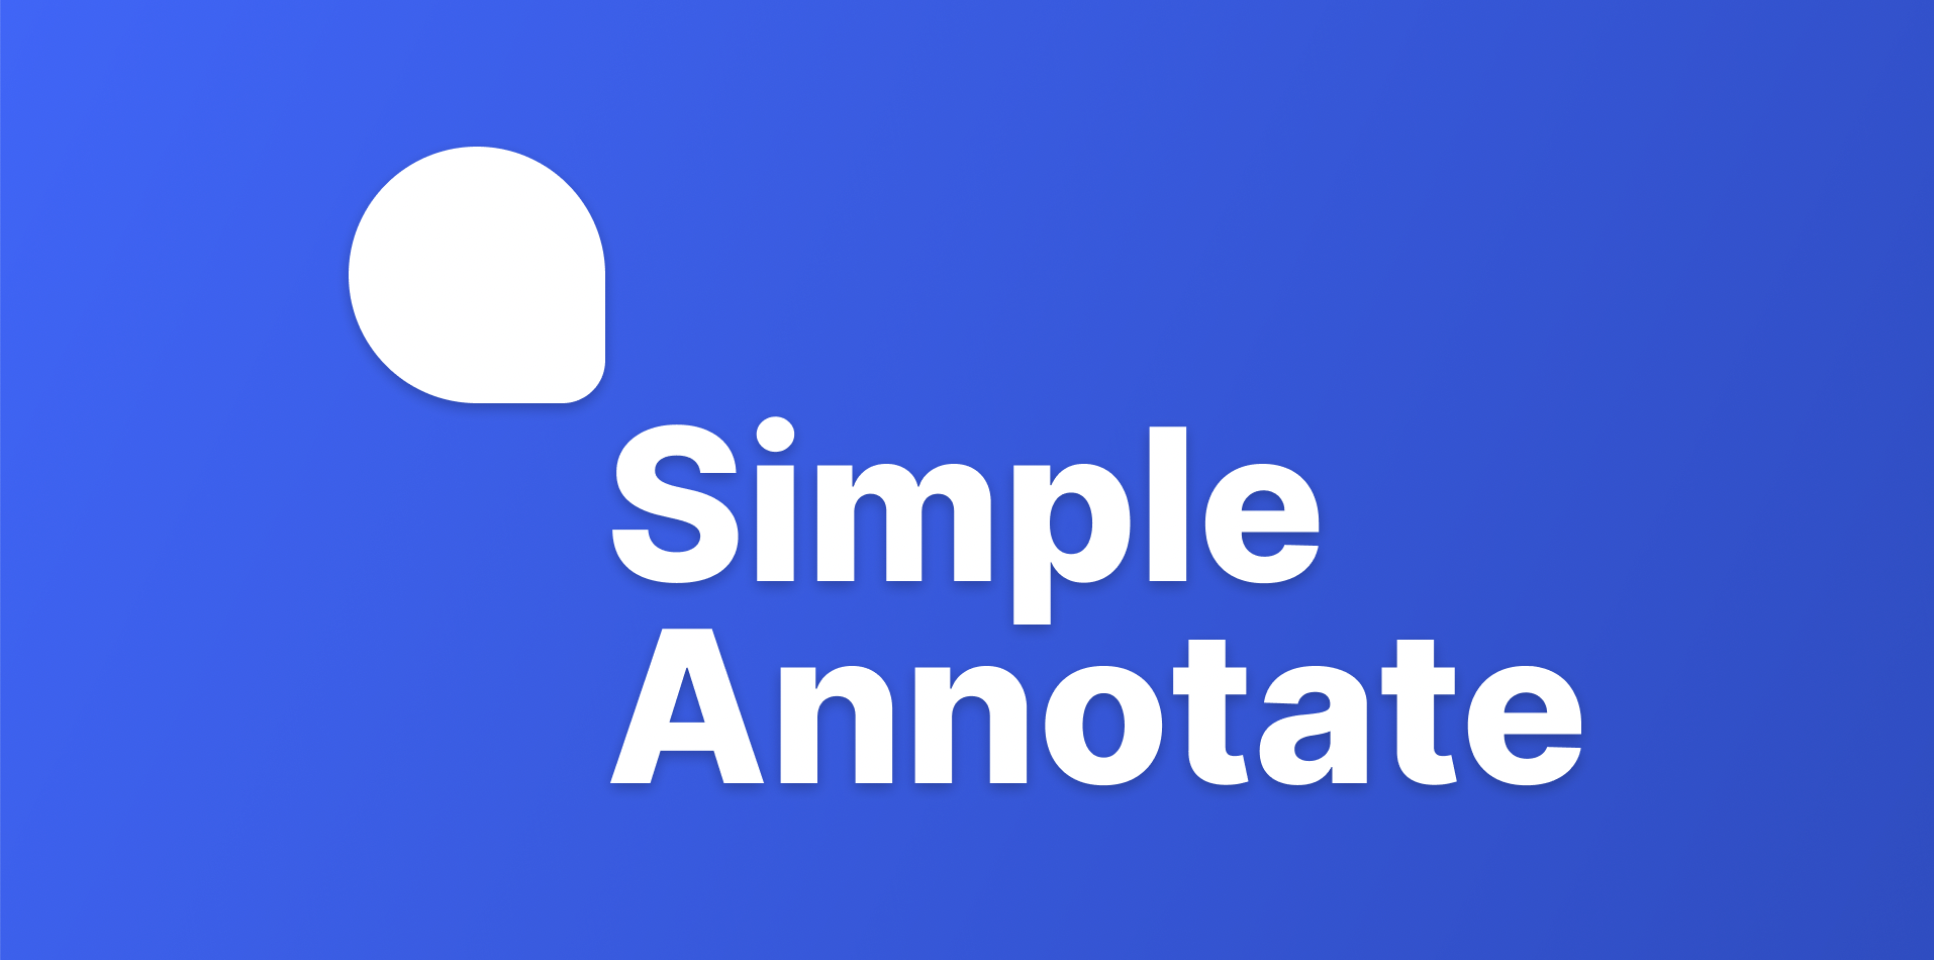 установить виджет для Фигмы Simple Annotate